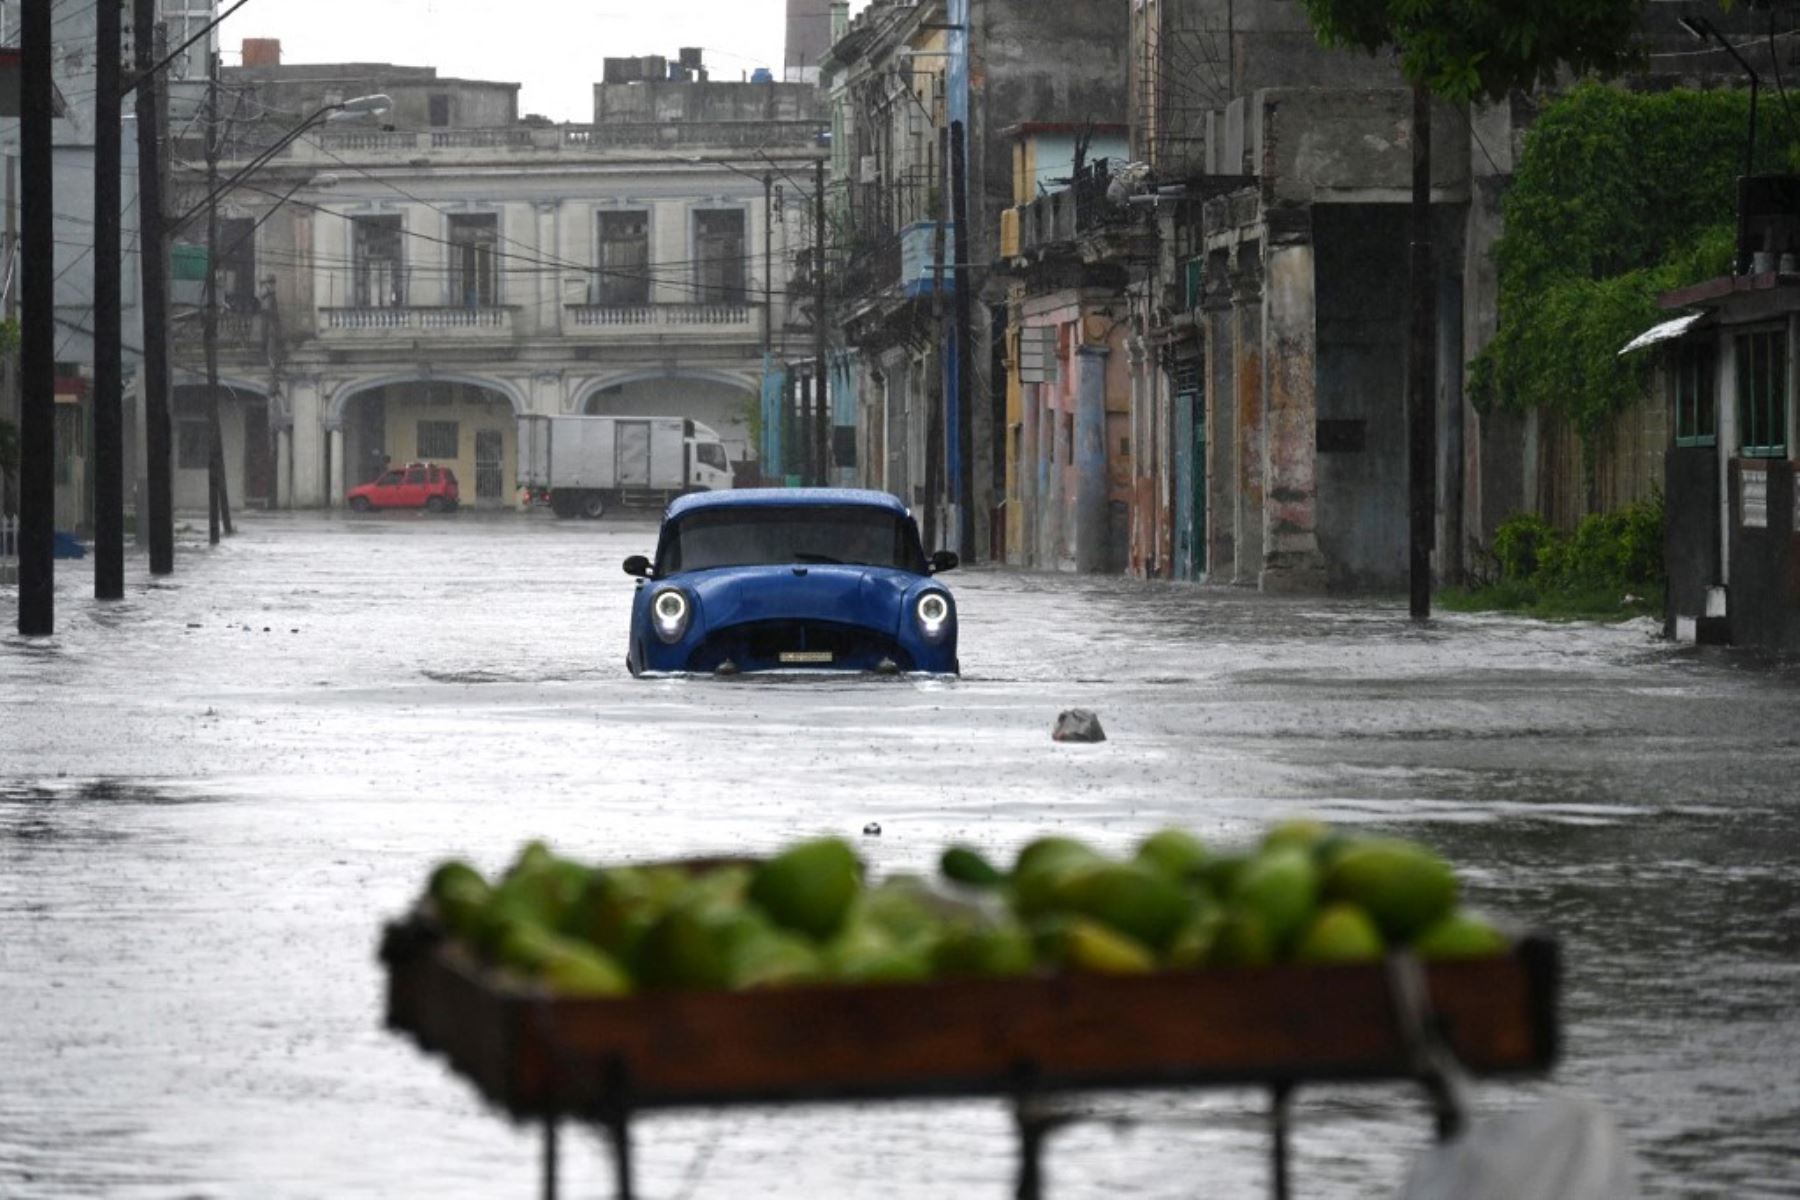 Idalia deja sentir sus efectos en La Habana, capital de Cuba (imagen referencial). Foto: AFP